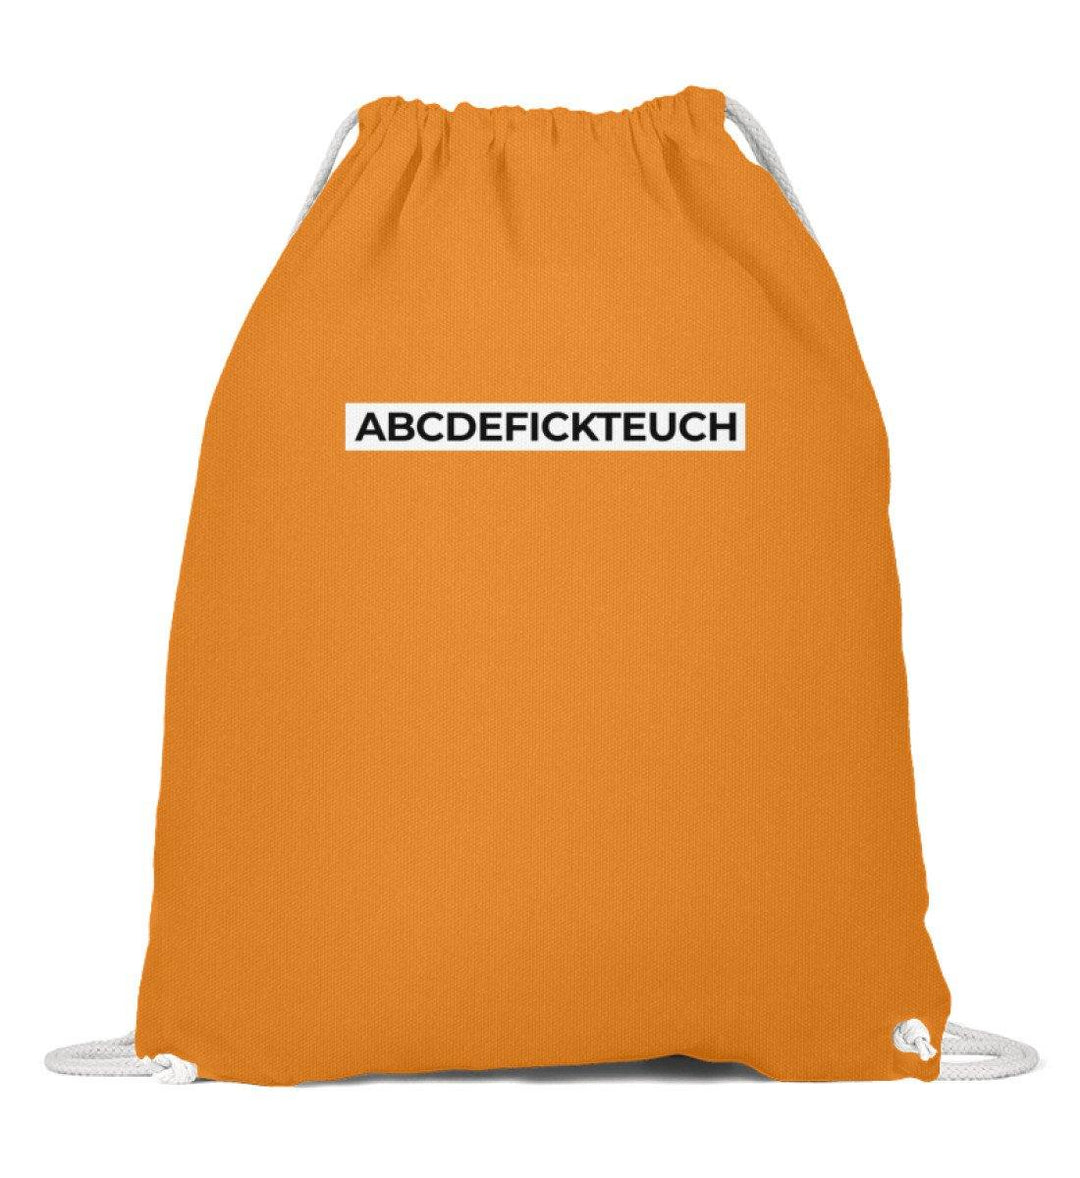 ABCDEFICKTEUCH - Words on Shirts  - Baumwoll Gymsac - Words on Shirts Sag es mit dem Mittelfinger Shirts Hoodies Sweatshirt Taschen Gymsack Spruch Sprüche Statement